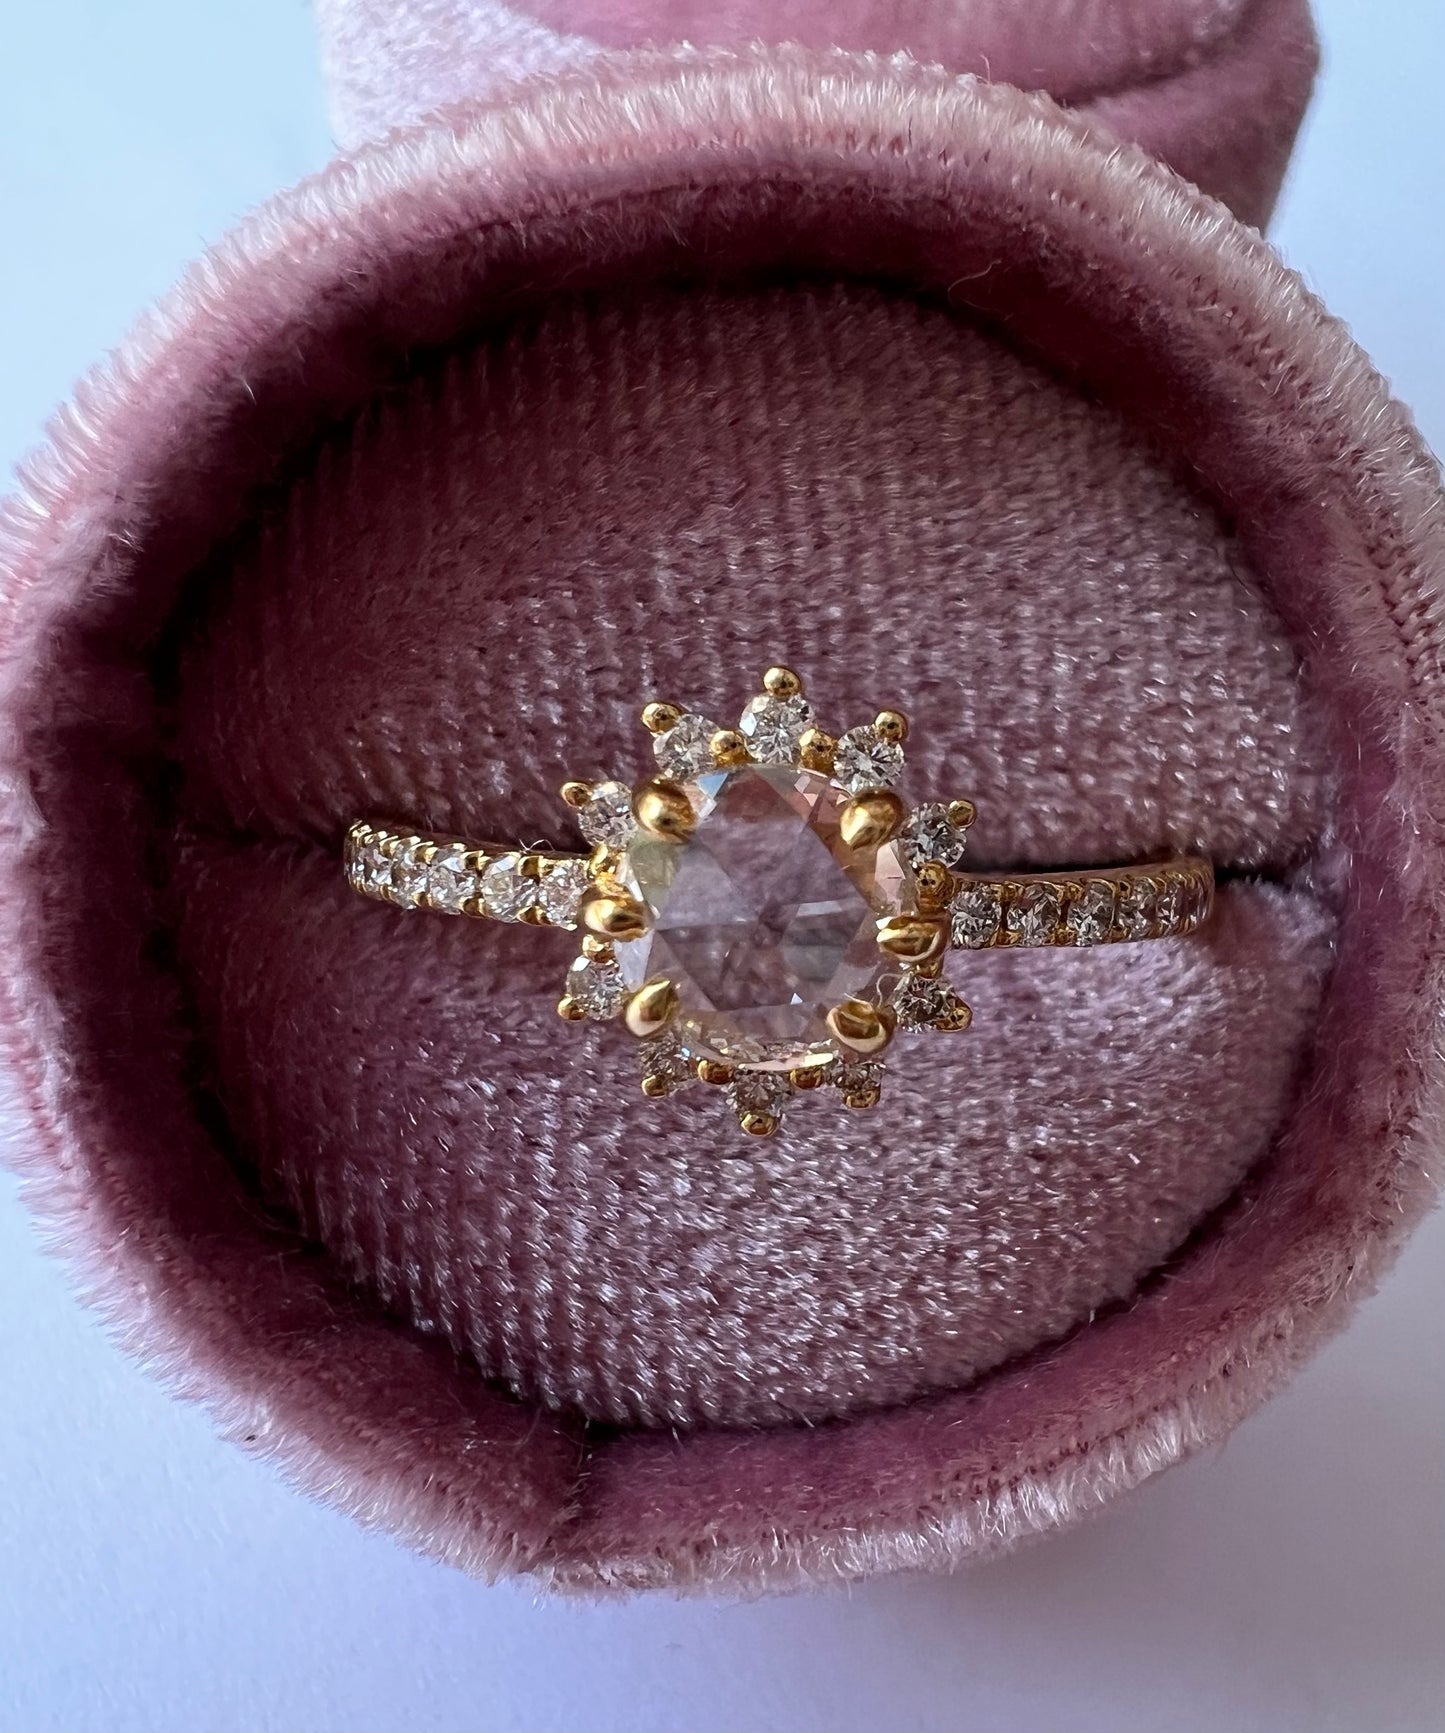 Starburst Engagement Ring